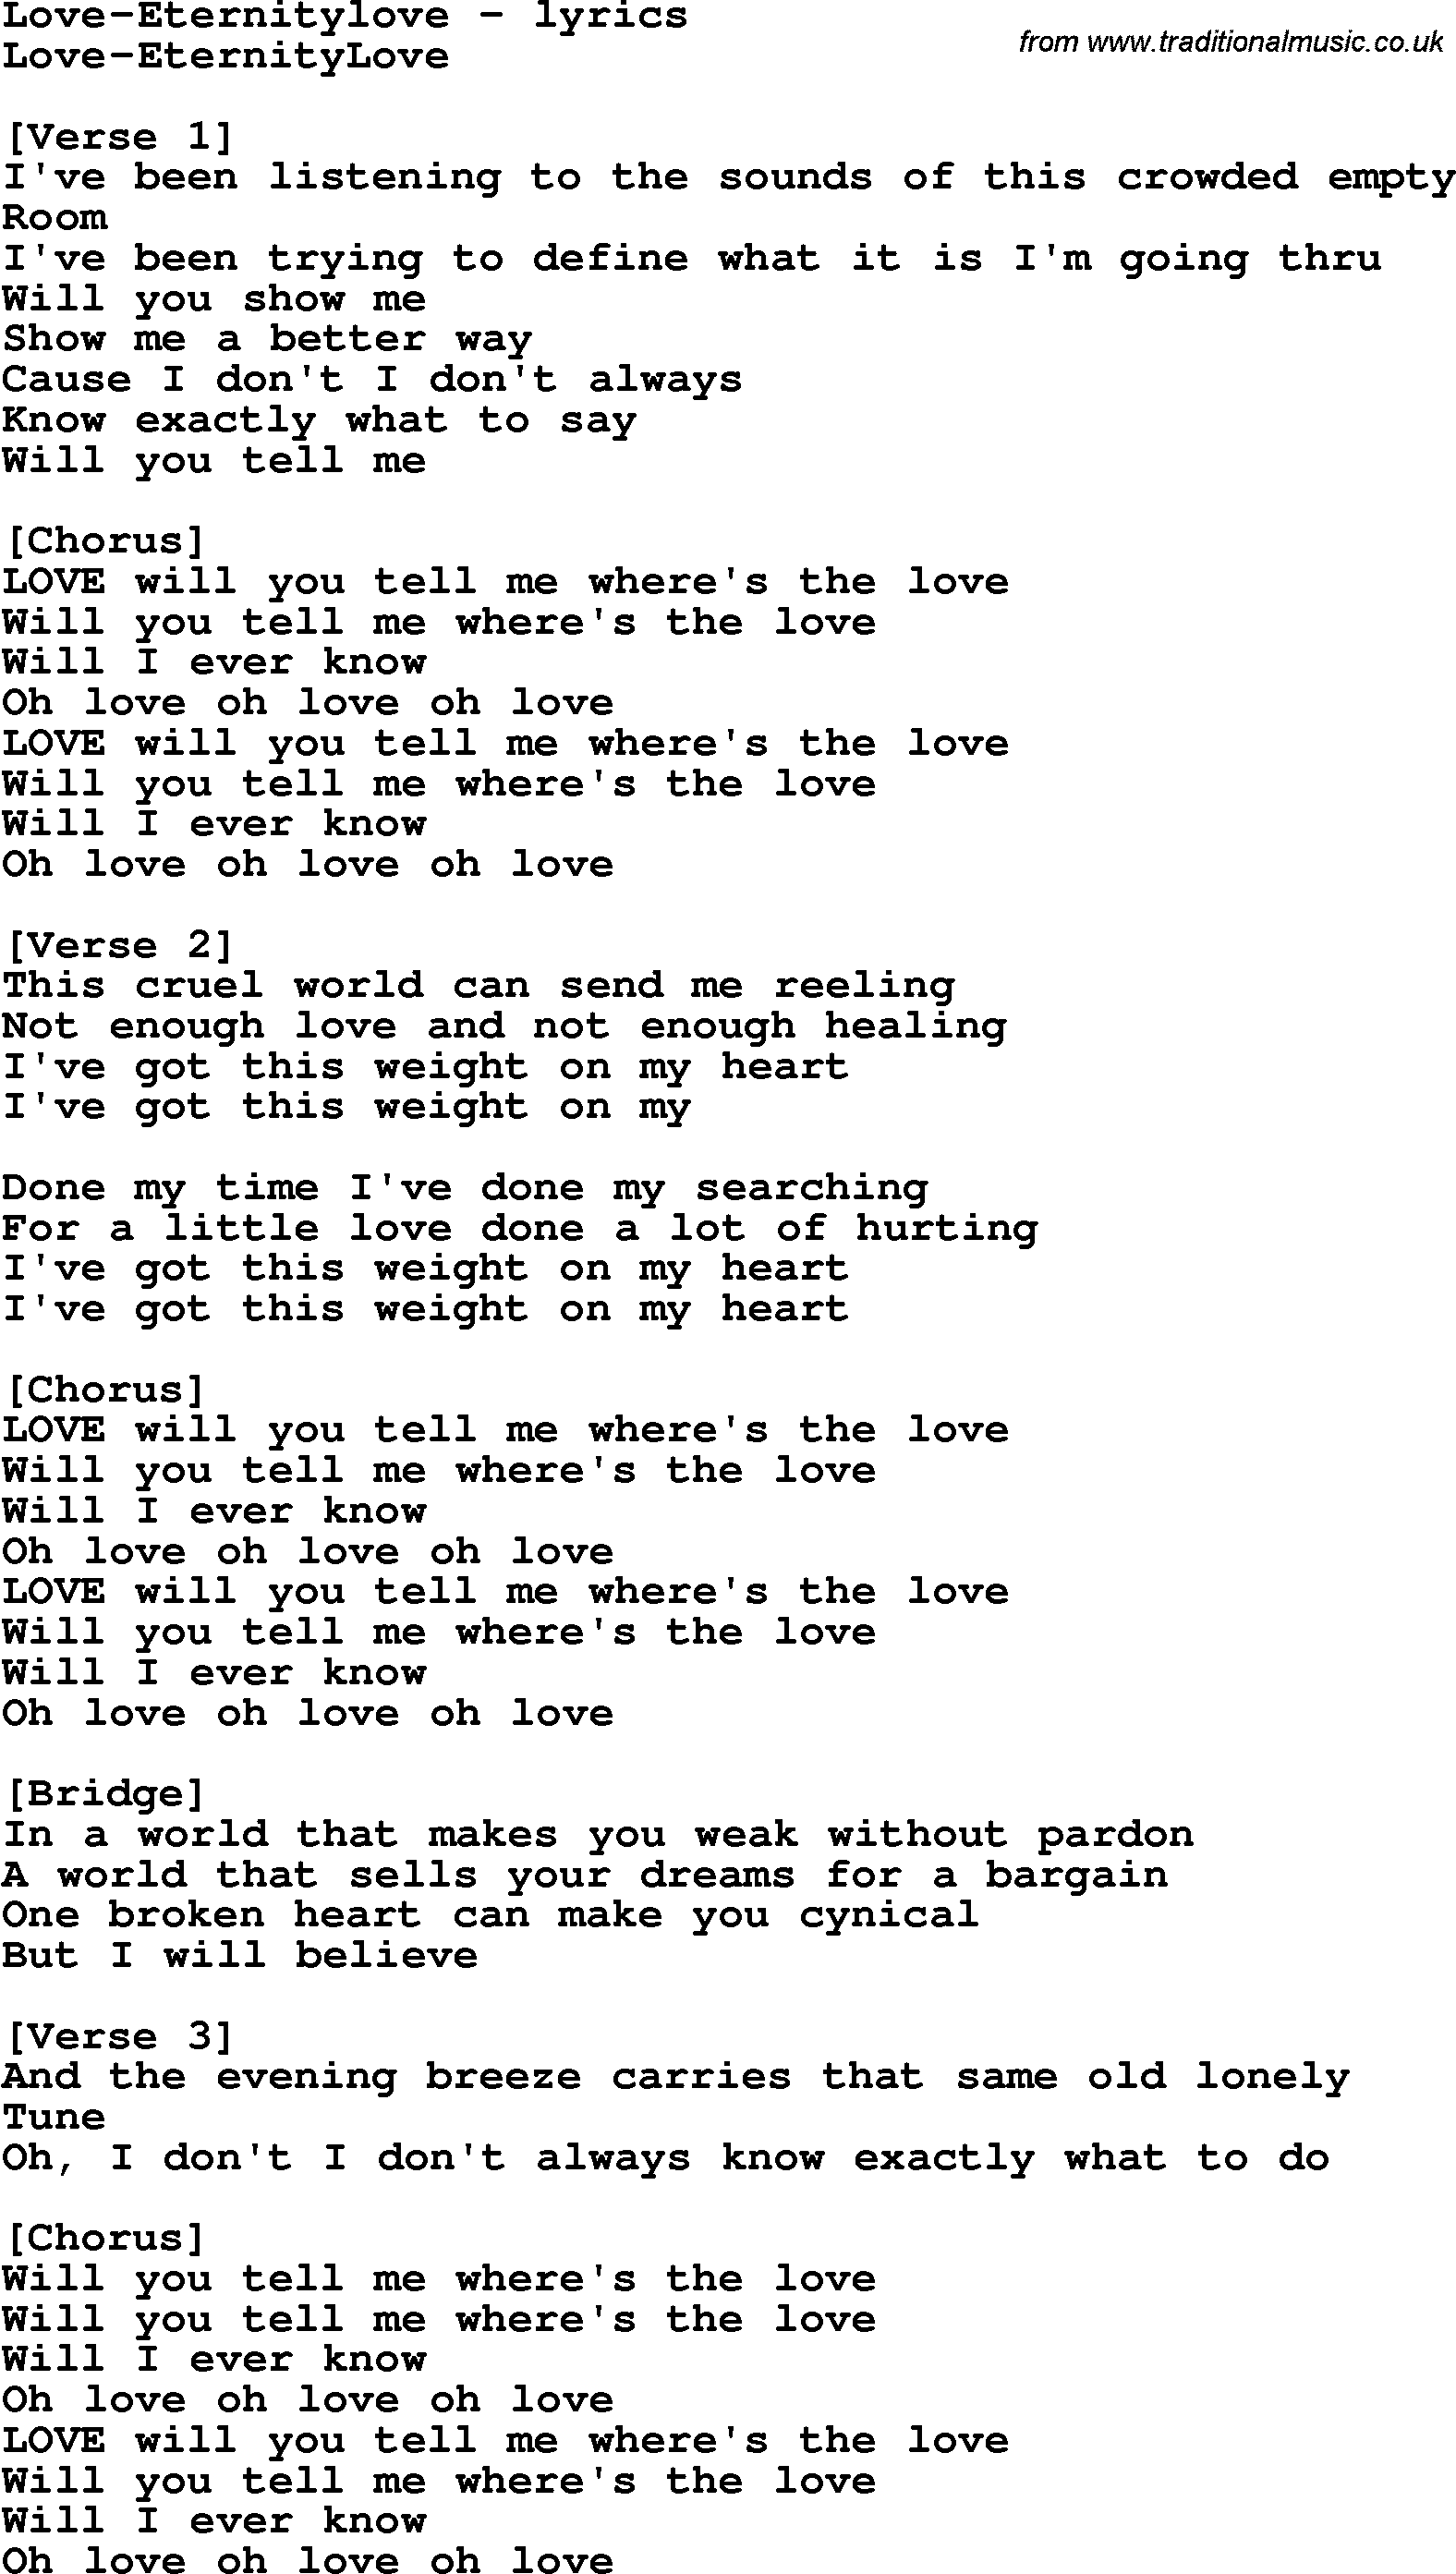 Love Song Lyrics for: Love-Eternitylove